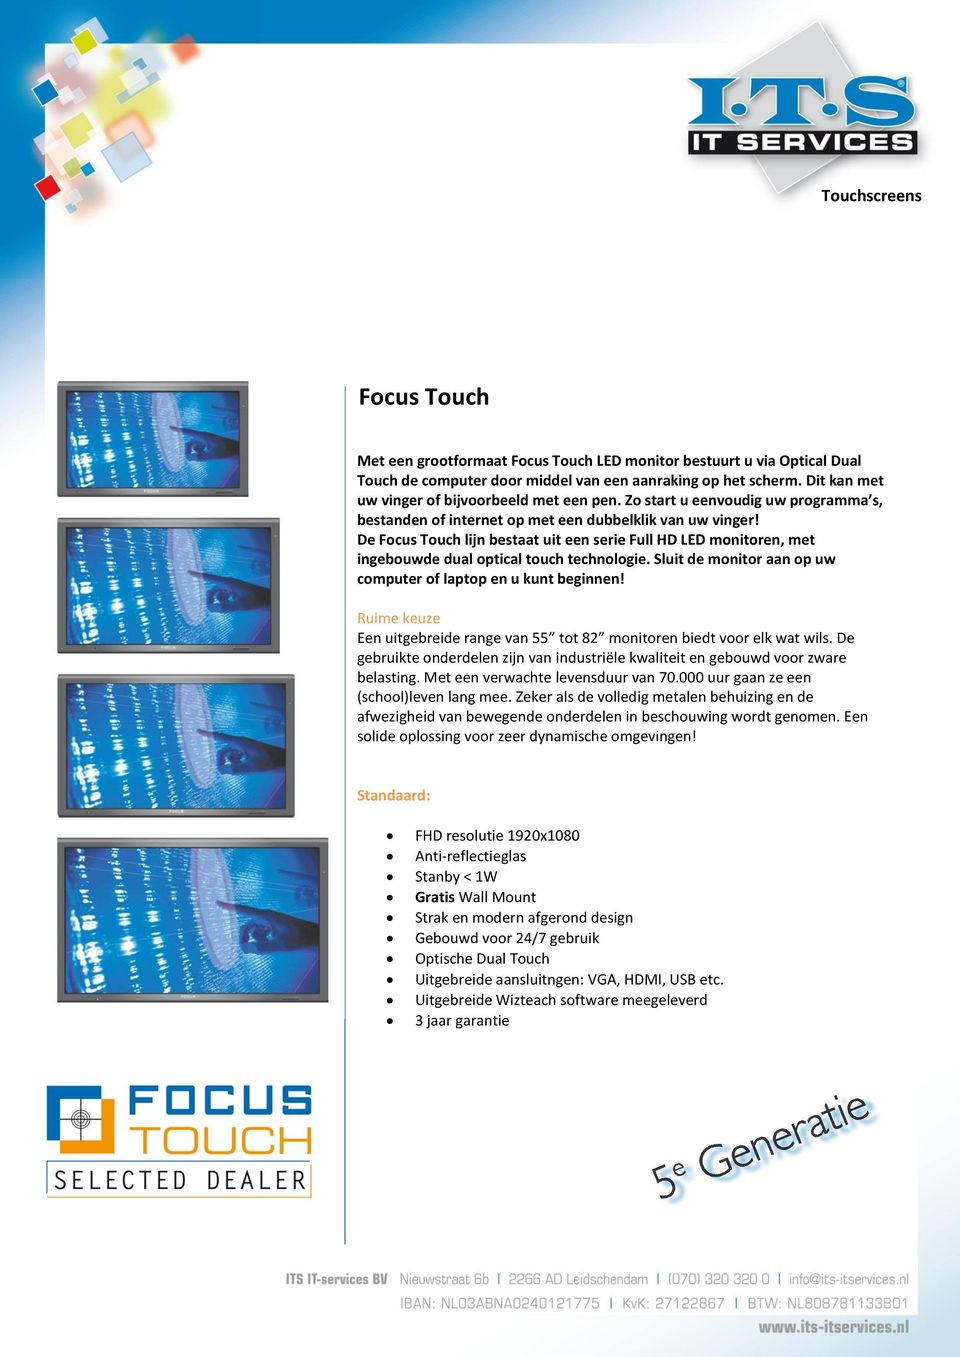 De Focus Touch lijn bestaat uit een serie Full HD LED monitoren, met ingebouwde dual optical touch technologie. Sluit de monitor aan op uw computer of laptop en u kunt beginnen!